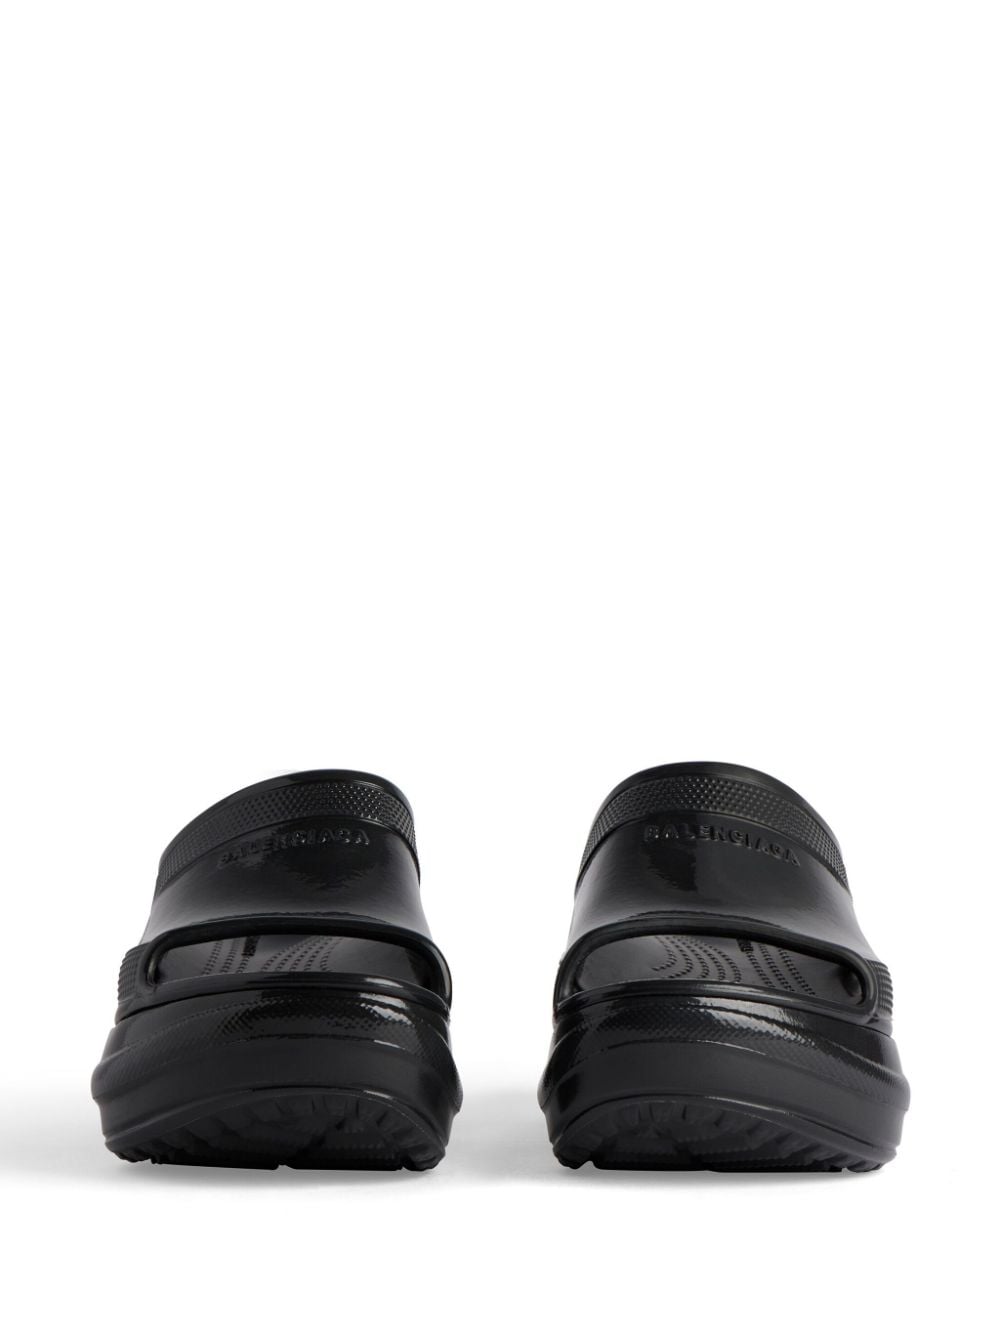 Balenciaga x Crocs pool slide sandals Black